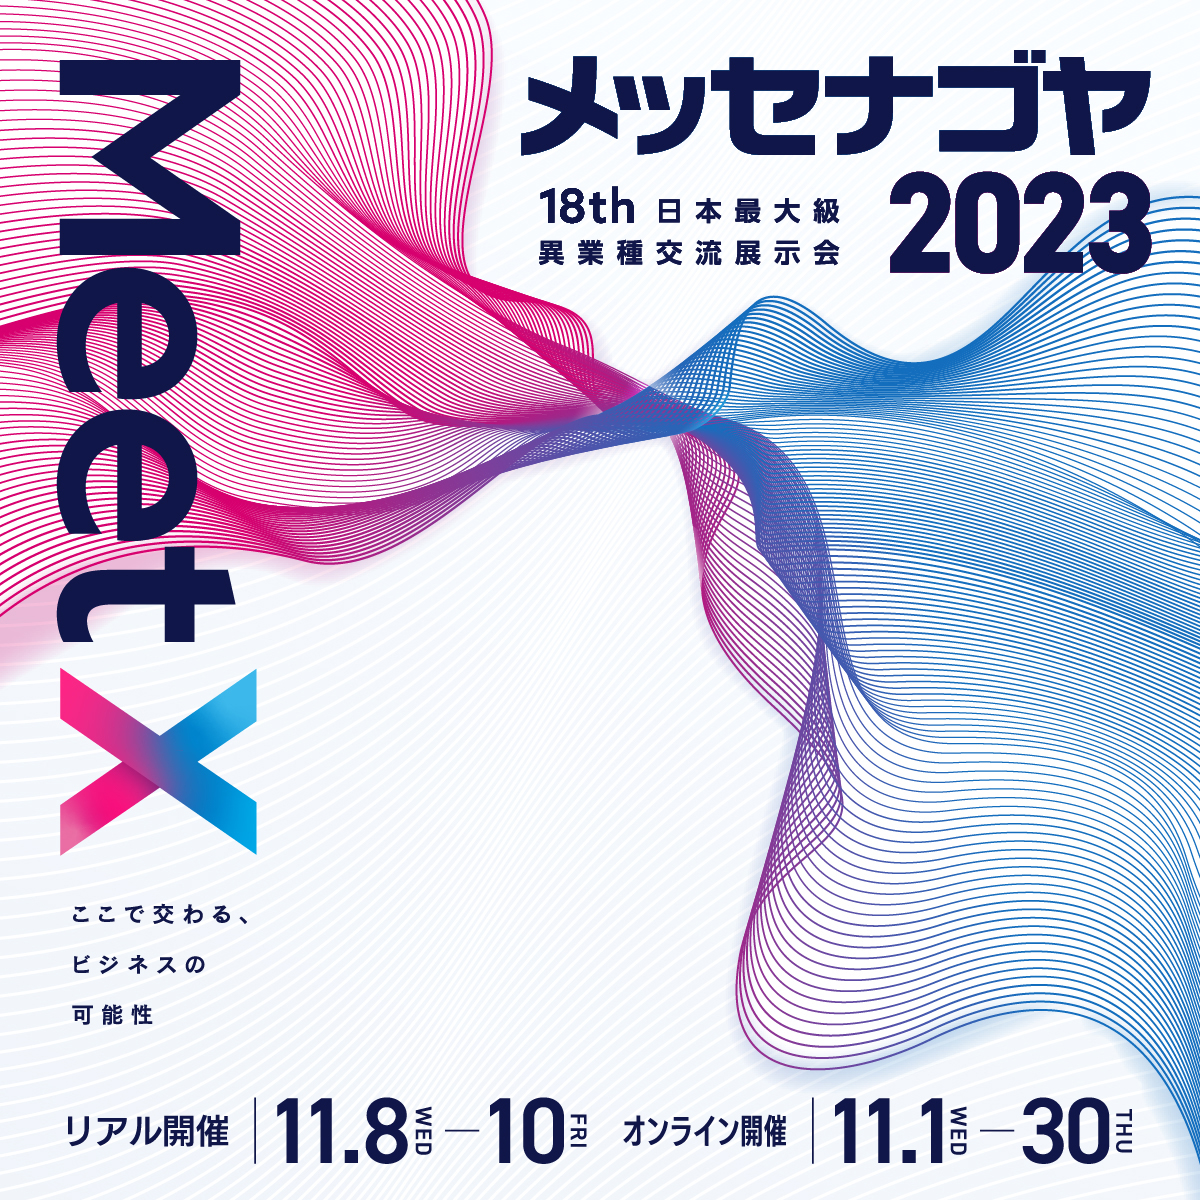 【2023年10月〜12月】展示会開催カレンダー